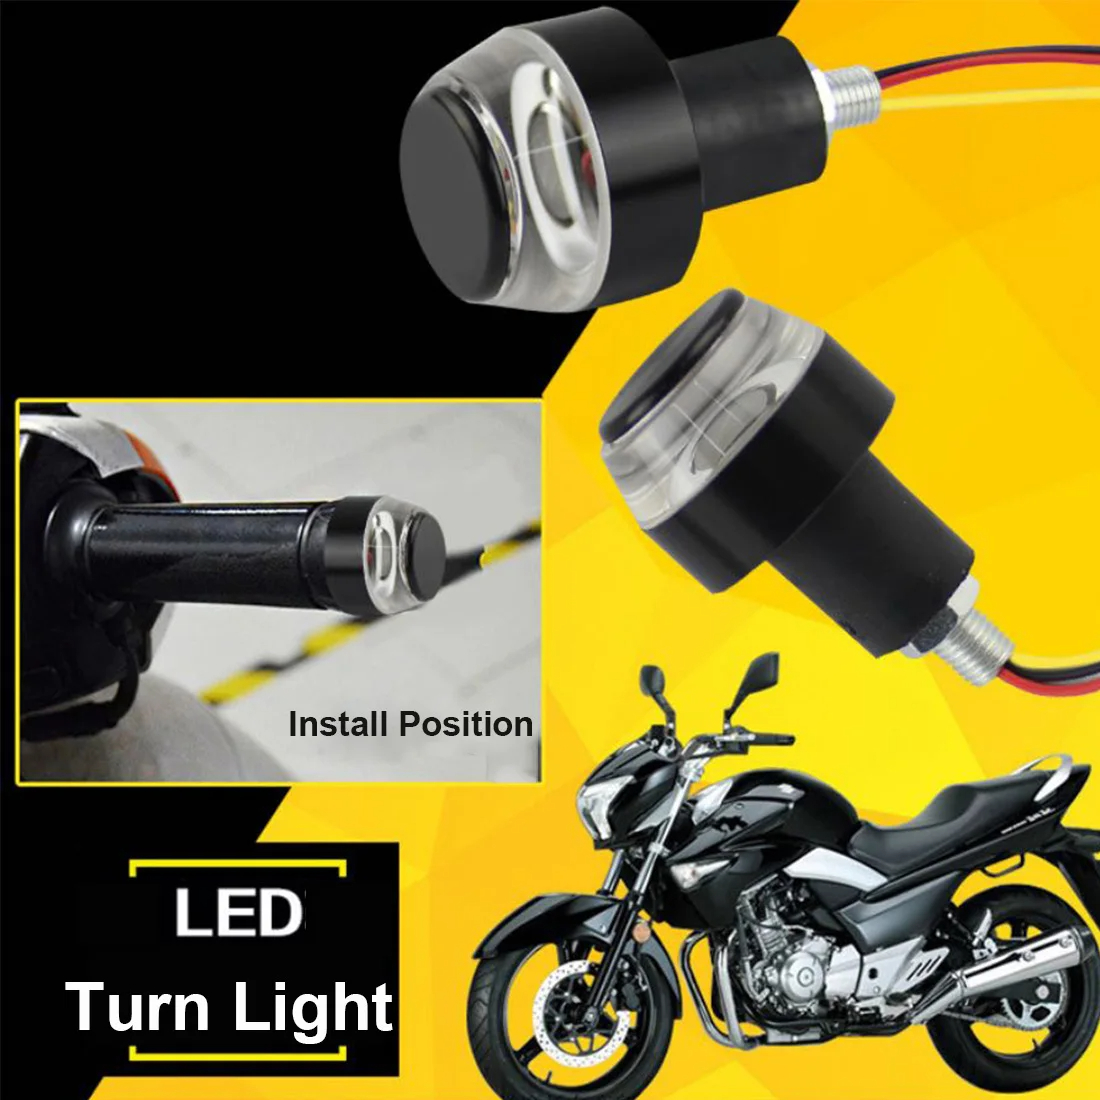 2pcs Motosiklet dönüş sinyali ışığı, 12 LED dönüş sinyali gösterge lambası, kehribar/beyaz ön gideri uç ışığı, su geçirmez flaş flaş ışığı